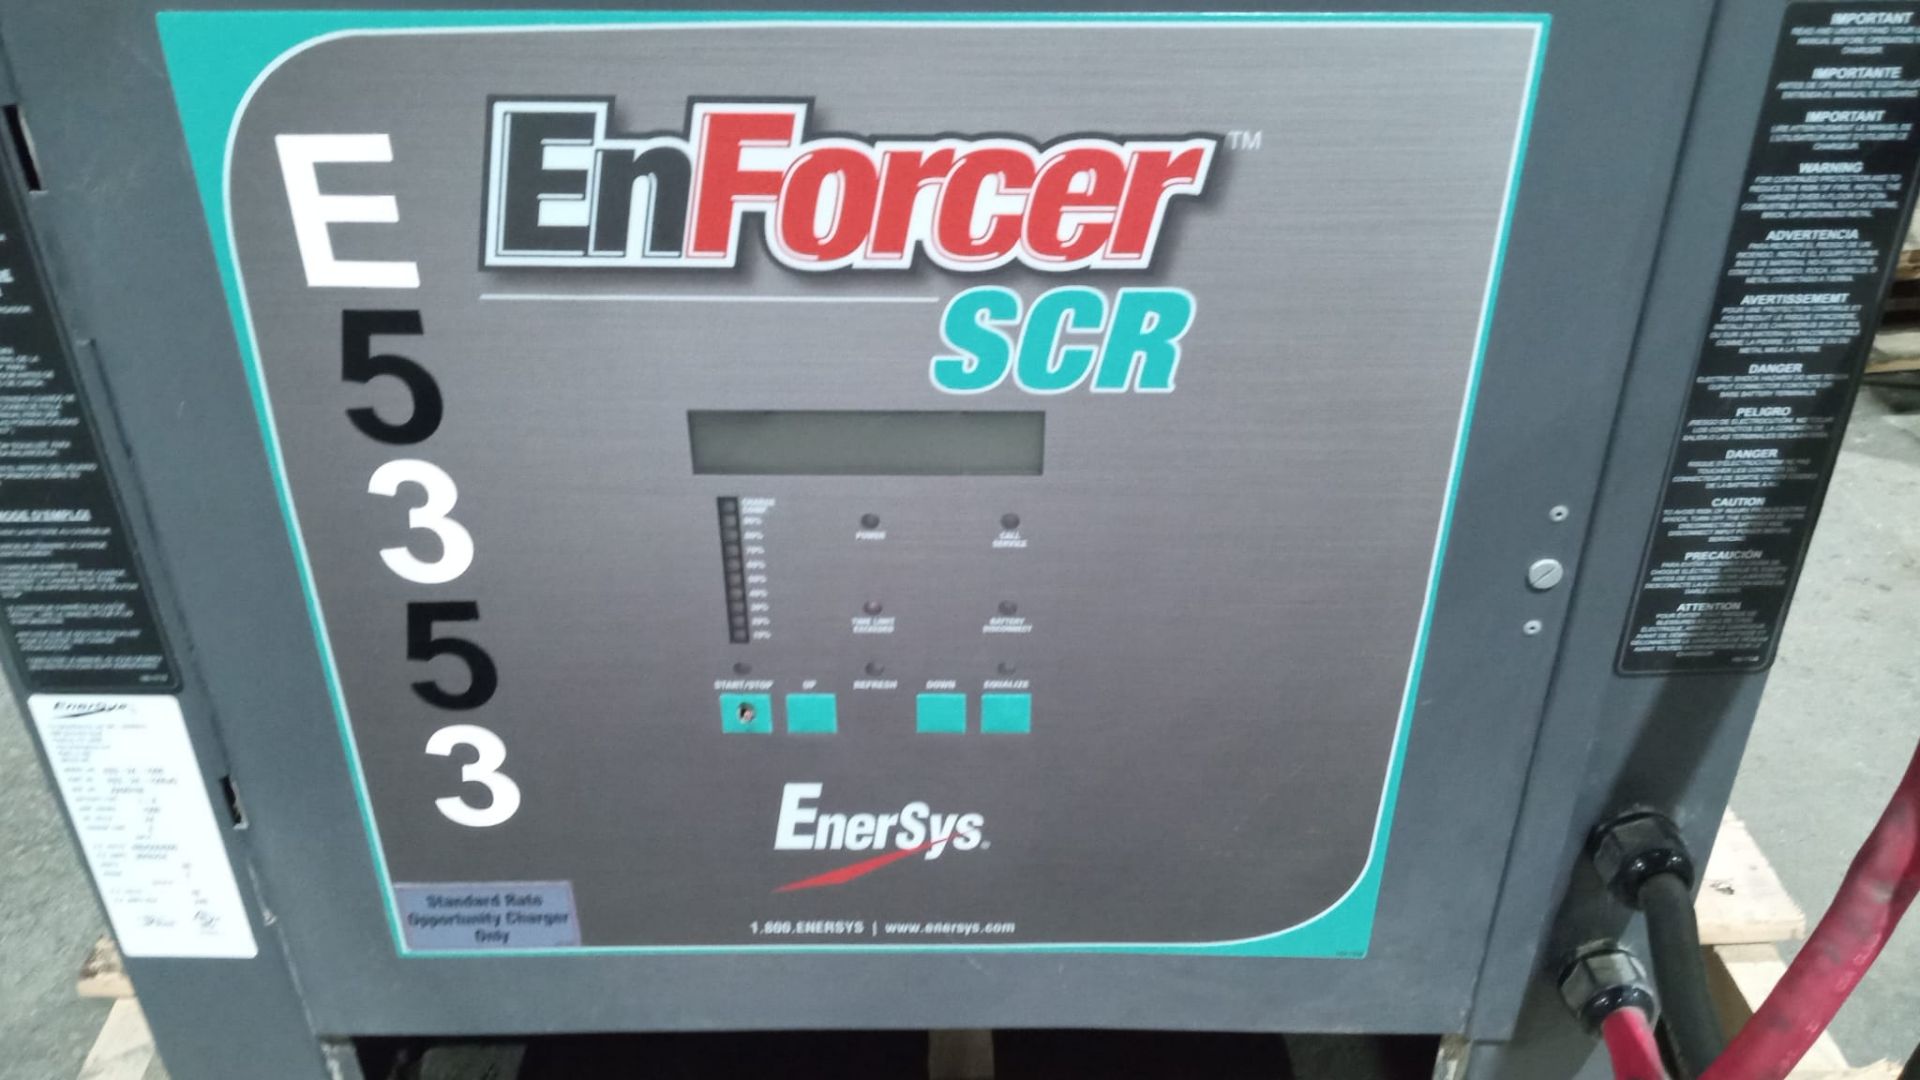 EnForcer SCR 48V Forklift Battery Charger 480/550/600V Input - Image 4 of 4